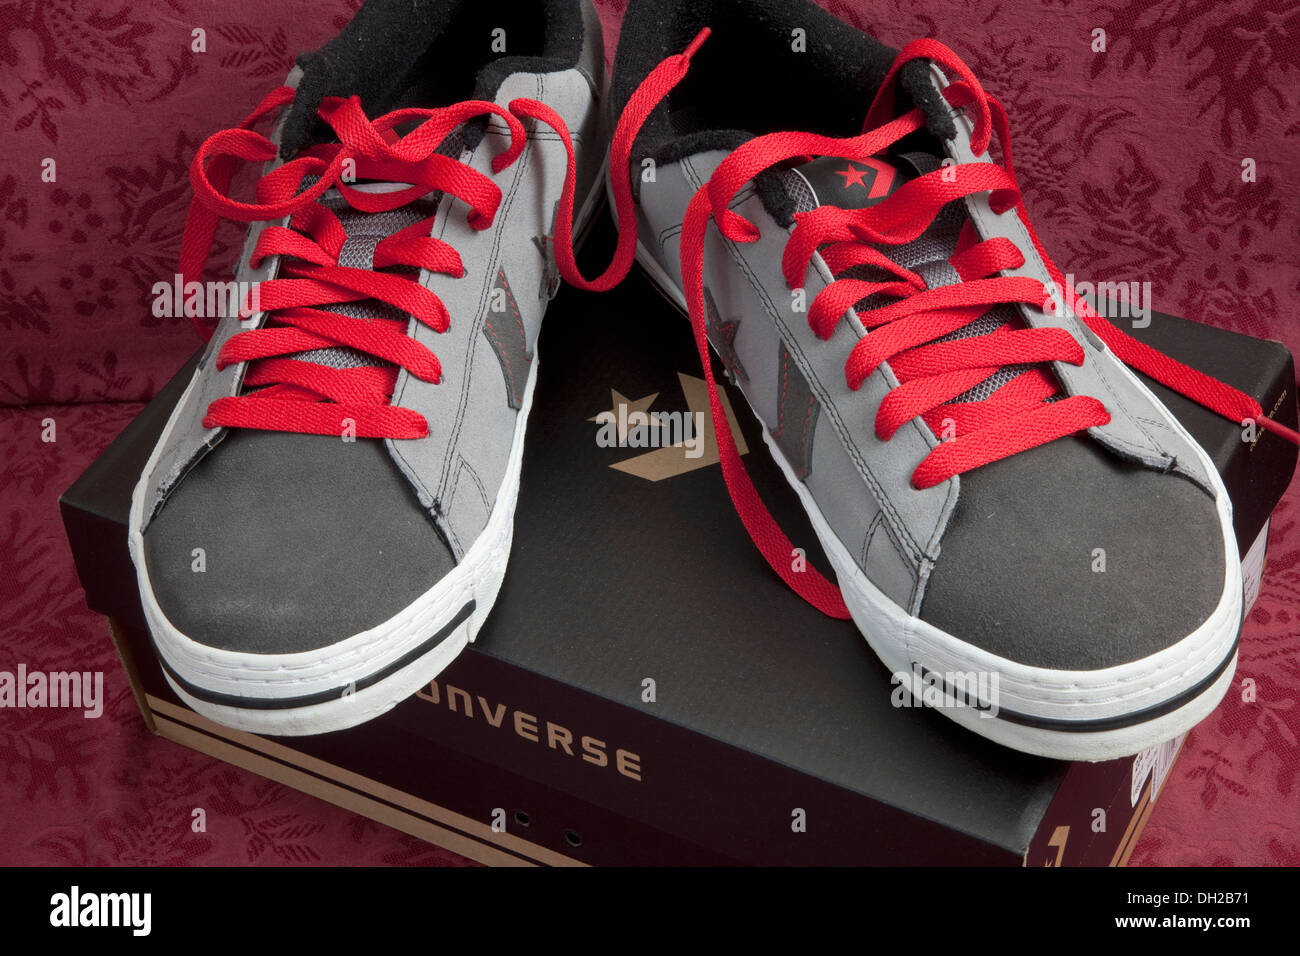 Photographes Converse All Star chaussures avec lacets rouges sur boîte d' origine. St Paul Minnesota MN USA Photo Stock - Alamy